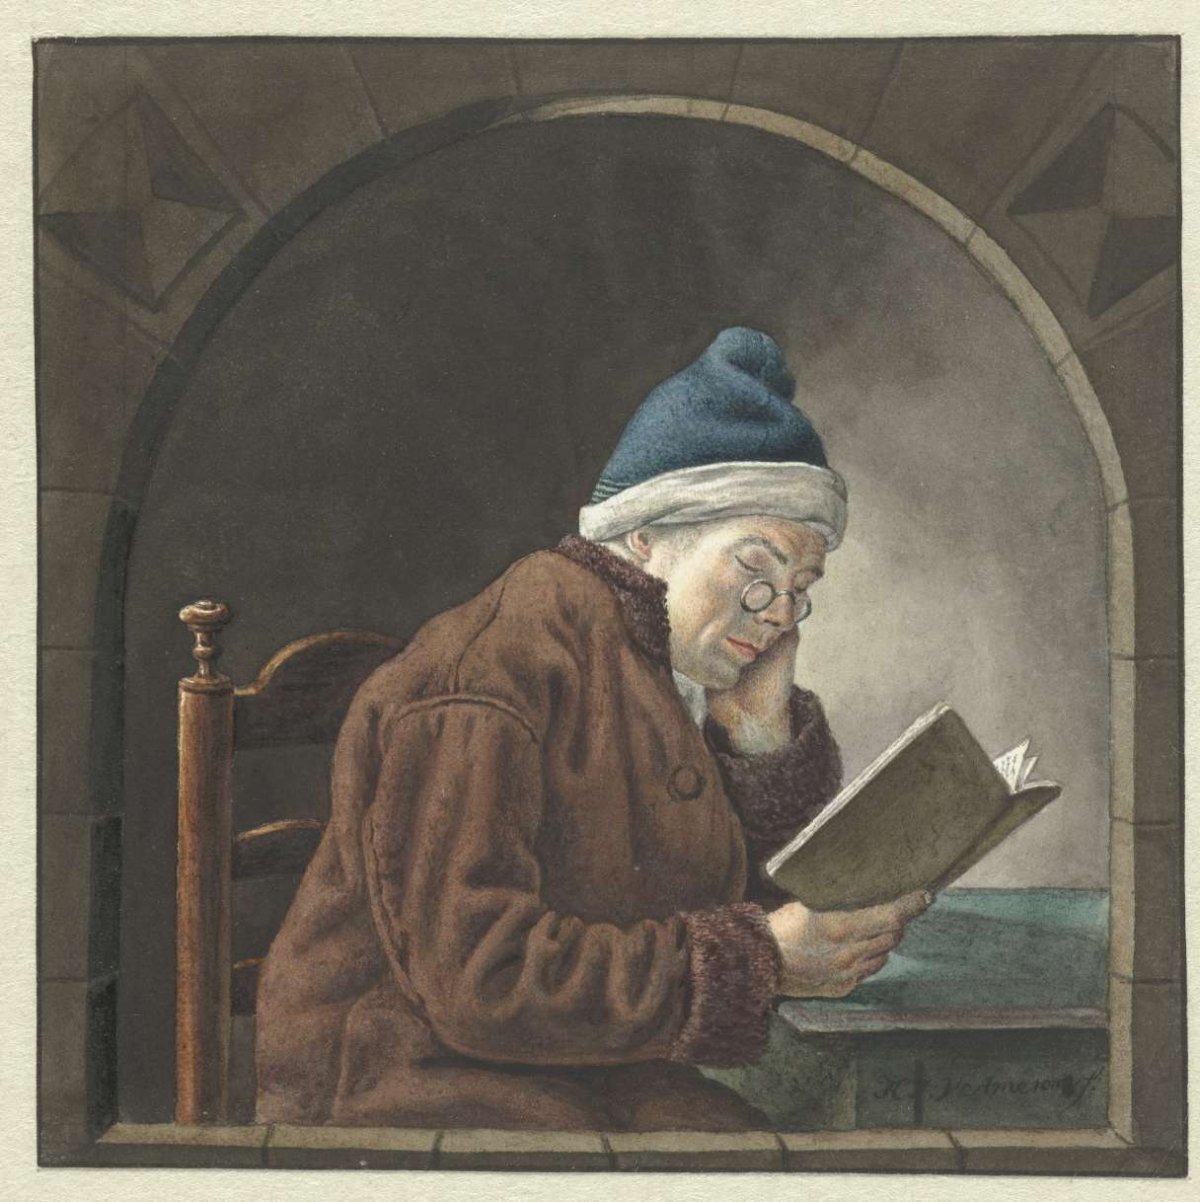 Lezende man, Hendrik Jan van Amerom, 1786 - 1833